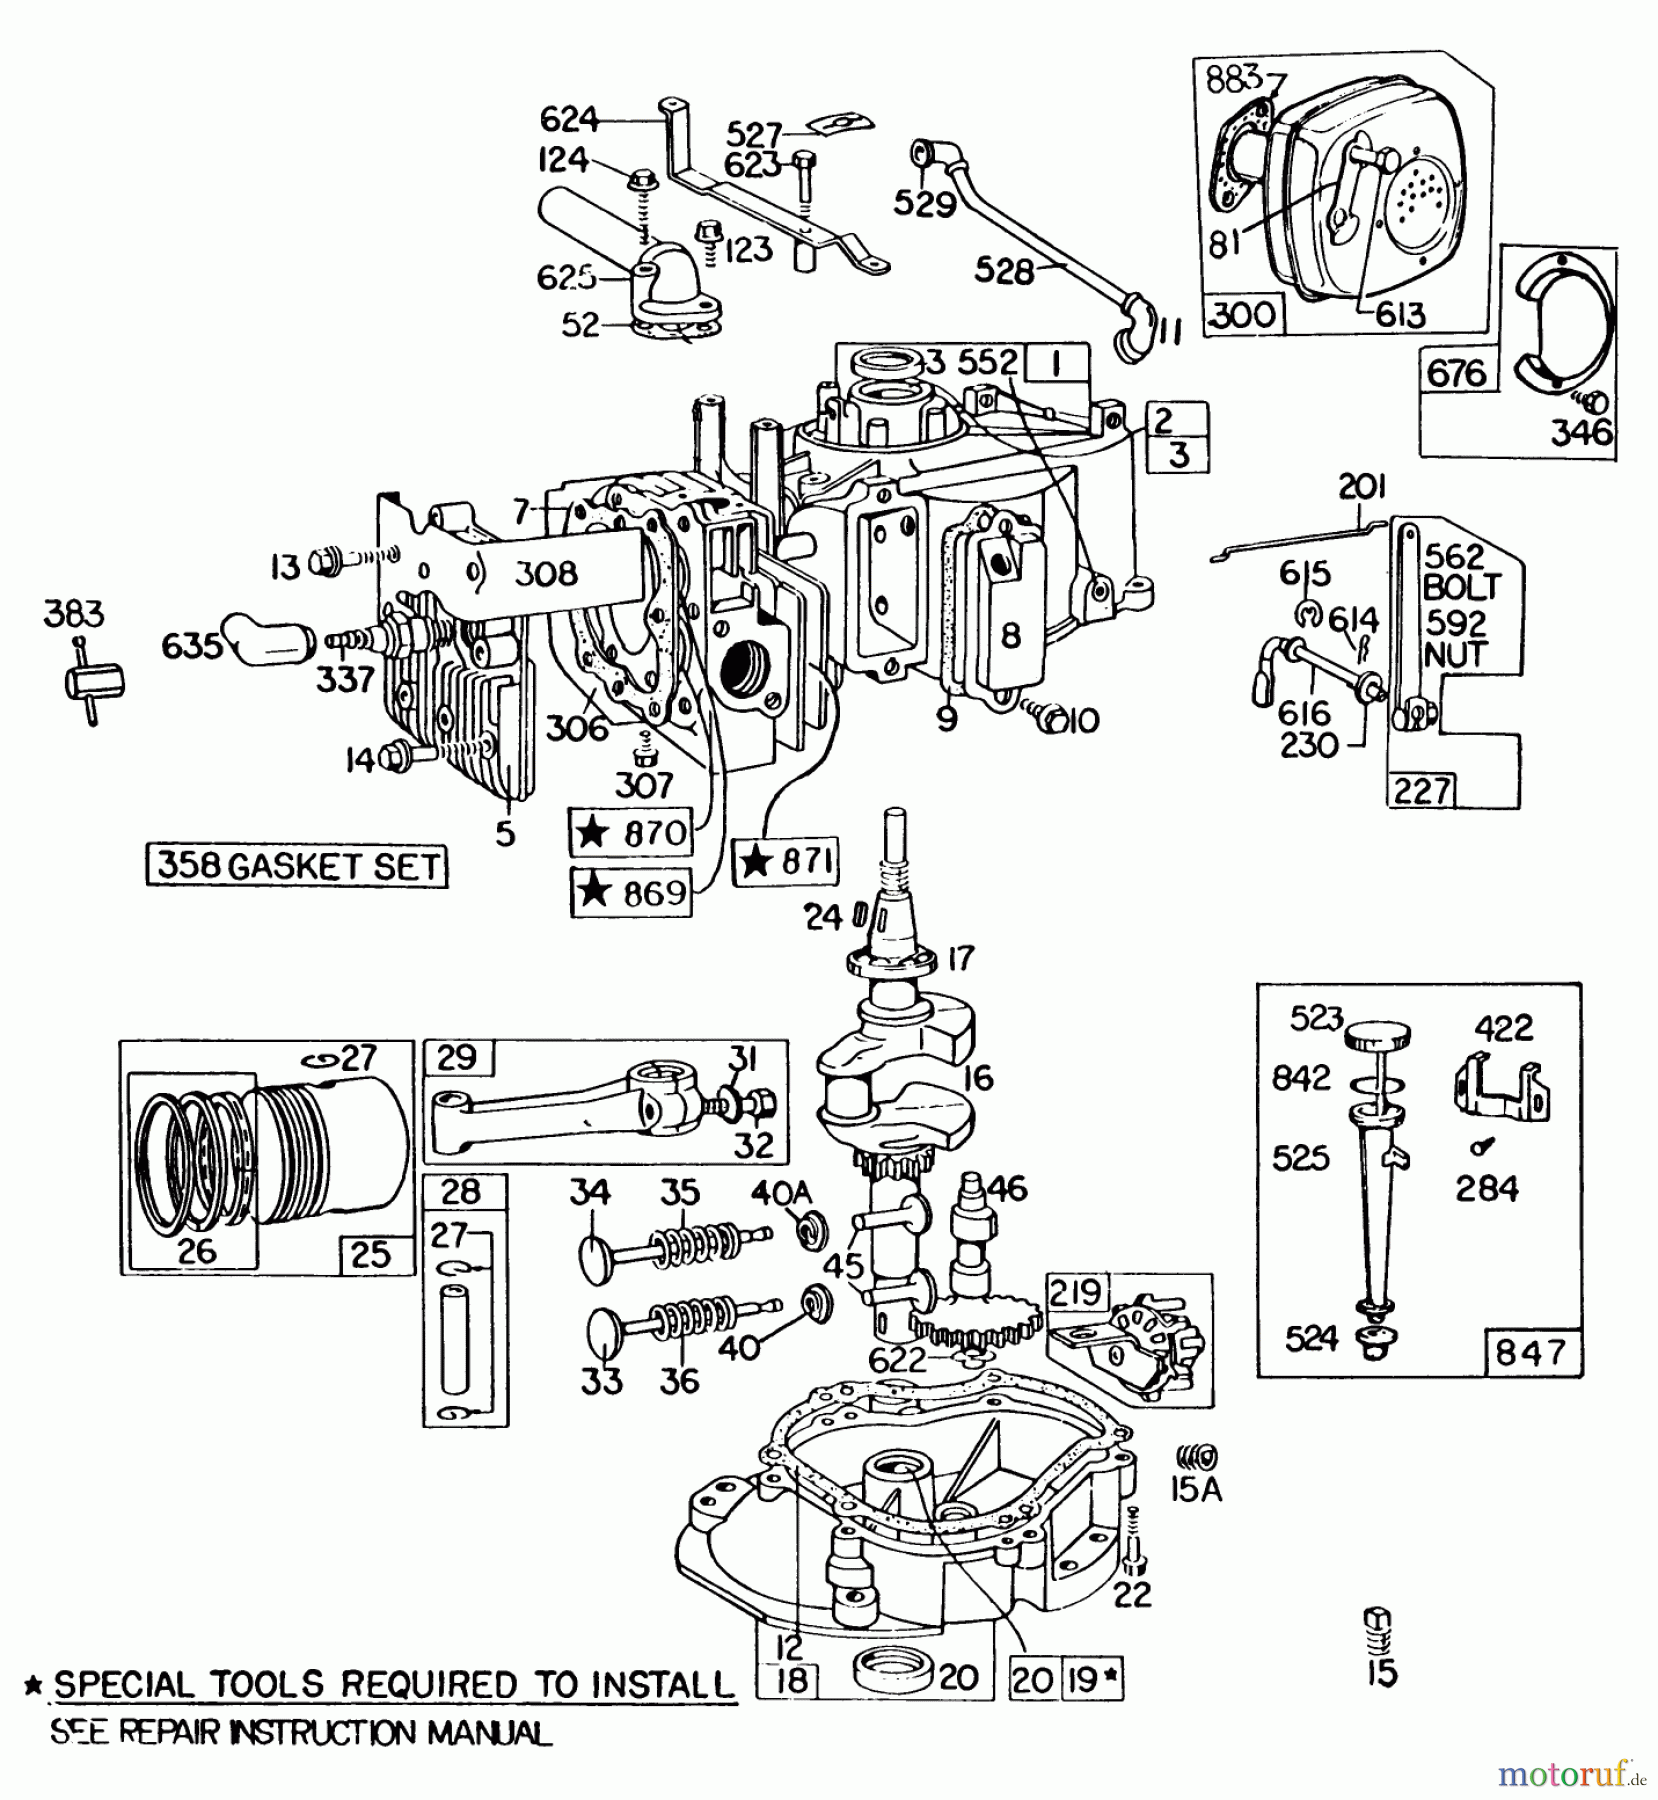  Toro Neu Mowers, Walk-Behind Seite 2 22020 - Toro Lawnmower, 1983 (3000001-3999999) ENGINE BRIGGS & STRATTON MODEL 131922-0163-01 #2